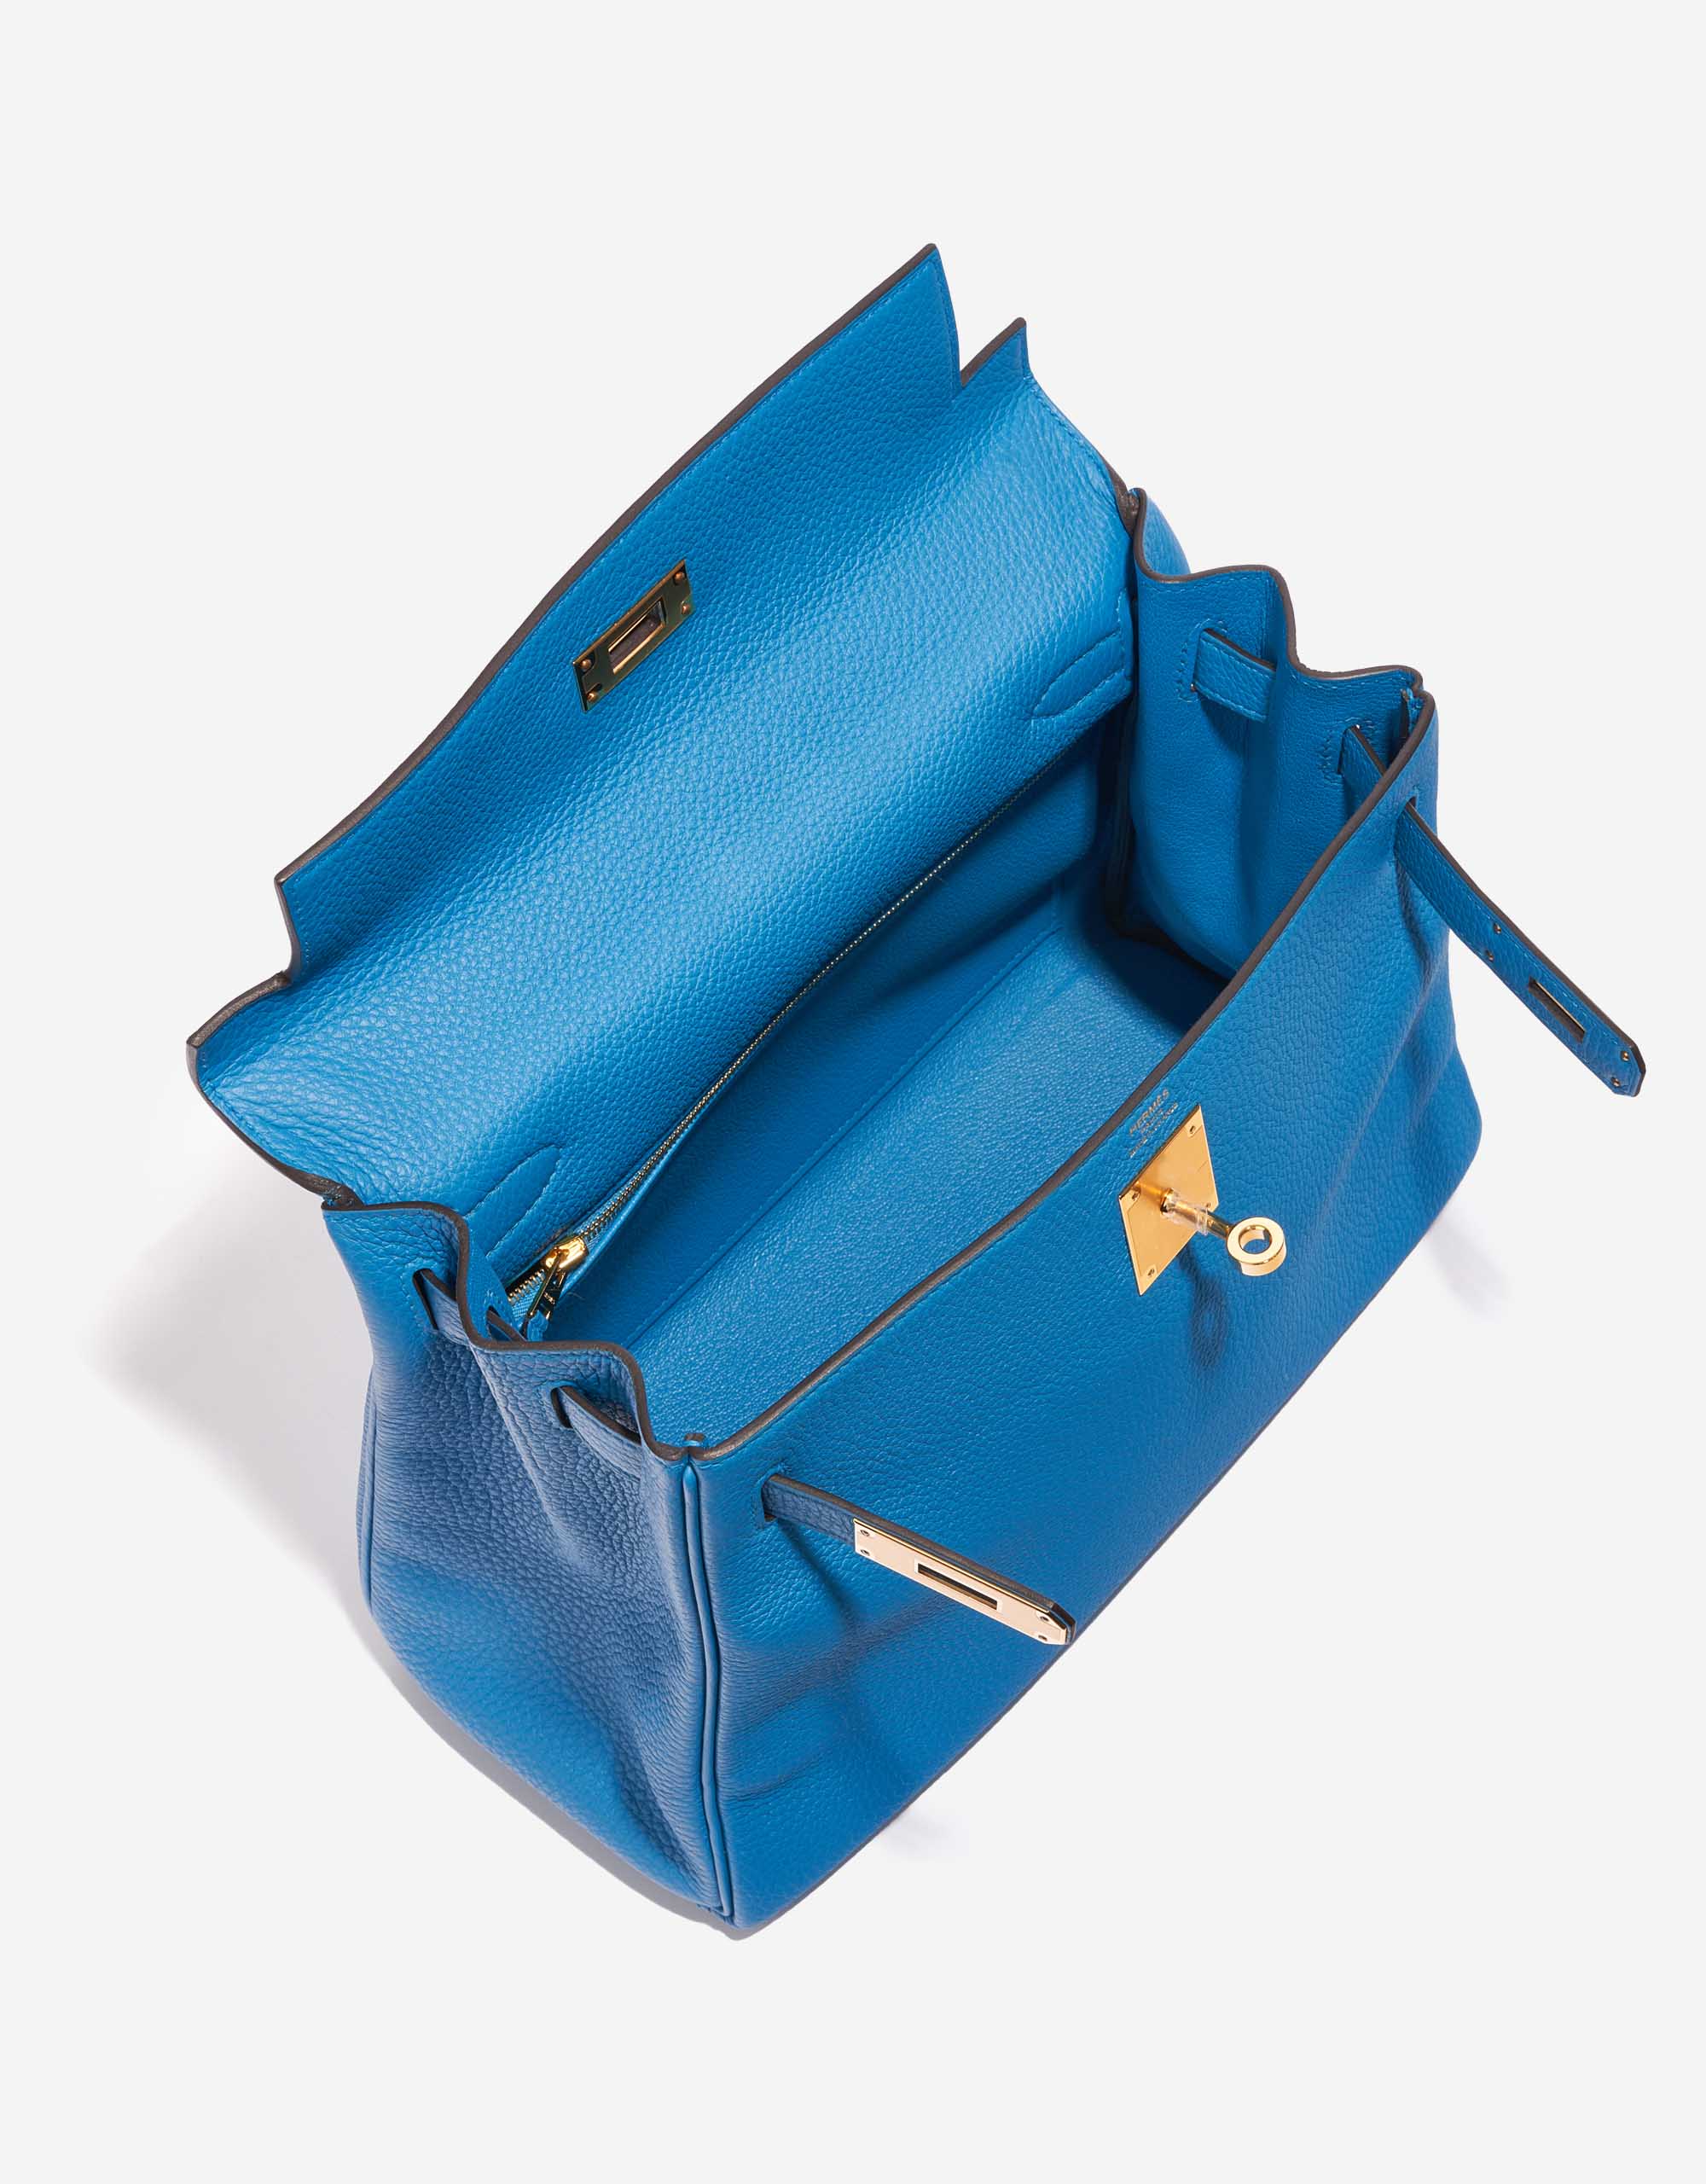 Sac Hermès d'occasion Kelly 28 Togo Bleu Zanzibar Bleu Inside | Vendez votre sac de créateur sur Saclab.com